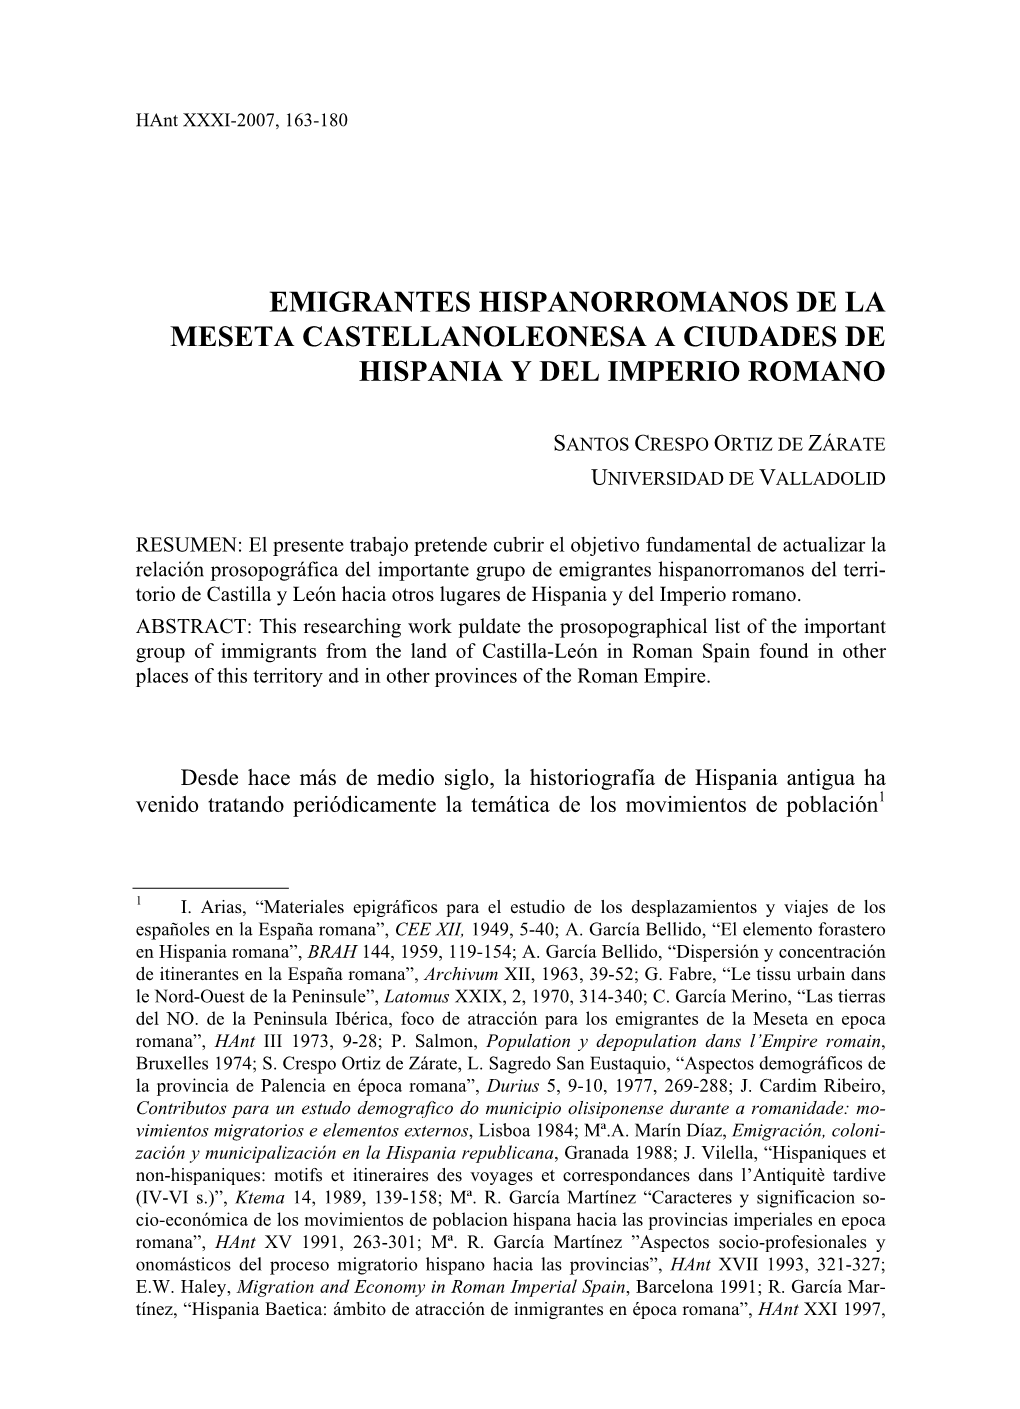 Emigrantes Hispanorromanos De La Meseta Castellanoleonesa a Ciudades De Hispania Y Del Imperio Romano